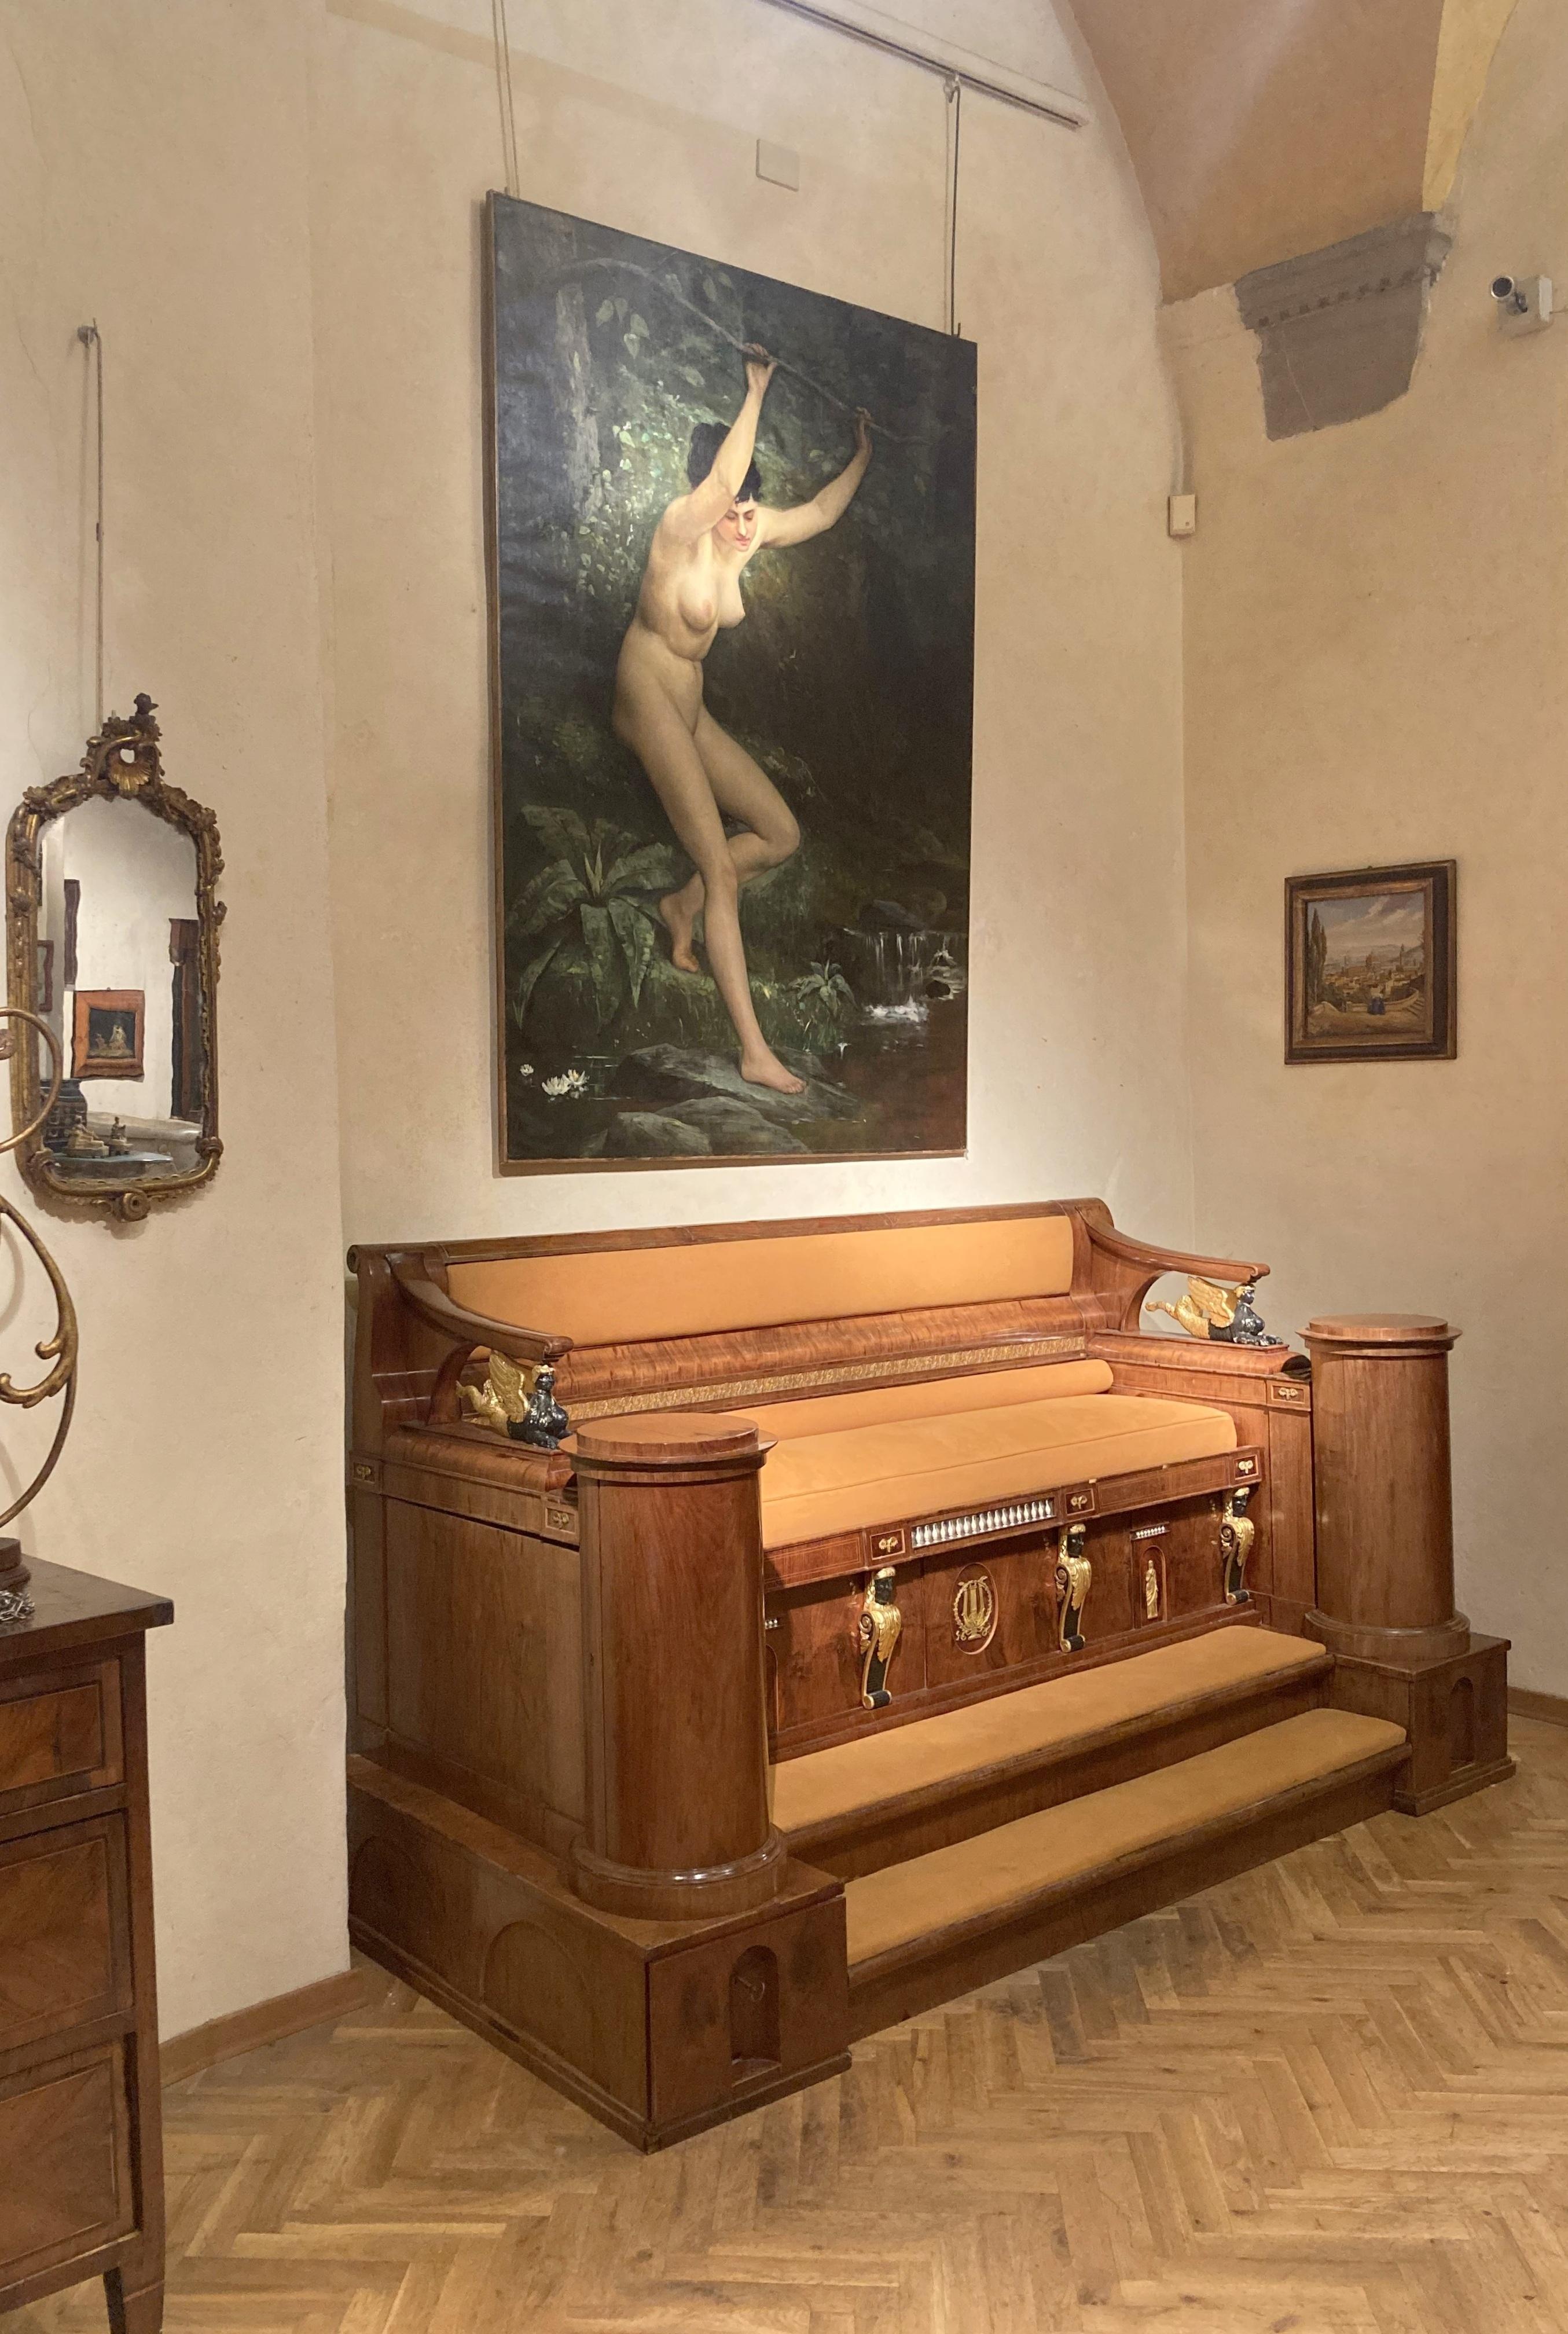 Ce meuble unique de qualité musée est un important banc ou canapé de la période Empire français datant de la fin du 18ème - début du 19ème siècle qui a meublé la salle de billard d'un château de rêve en France, la provenance est le Château de